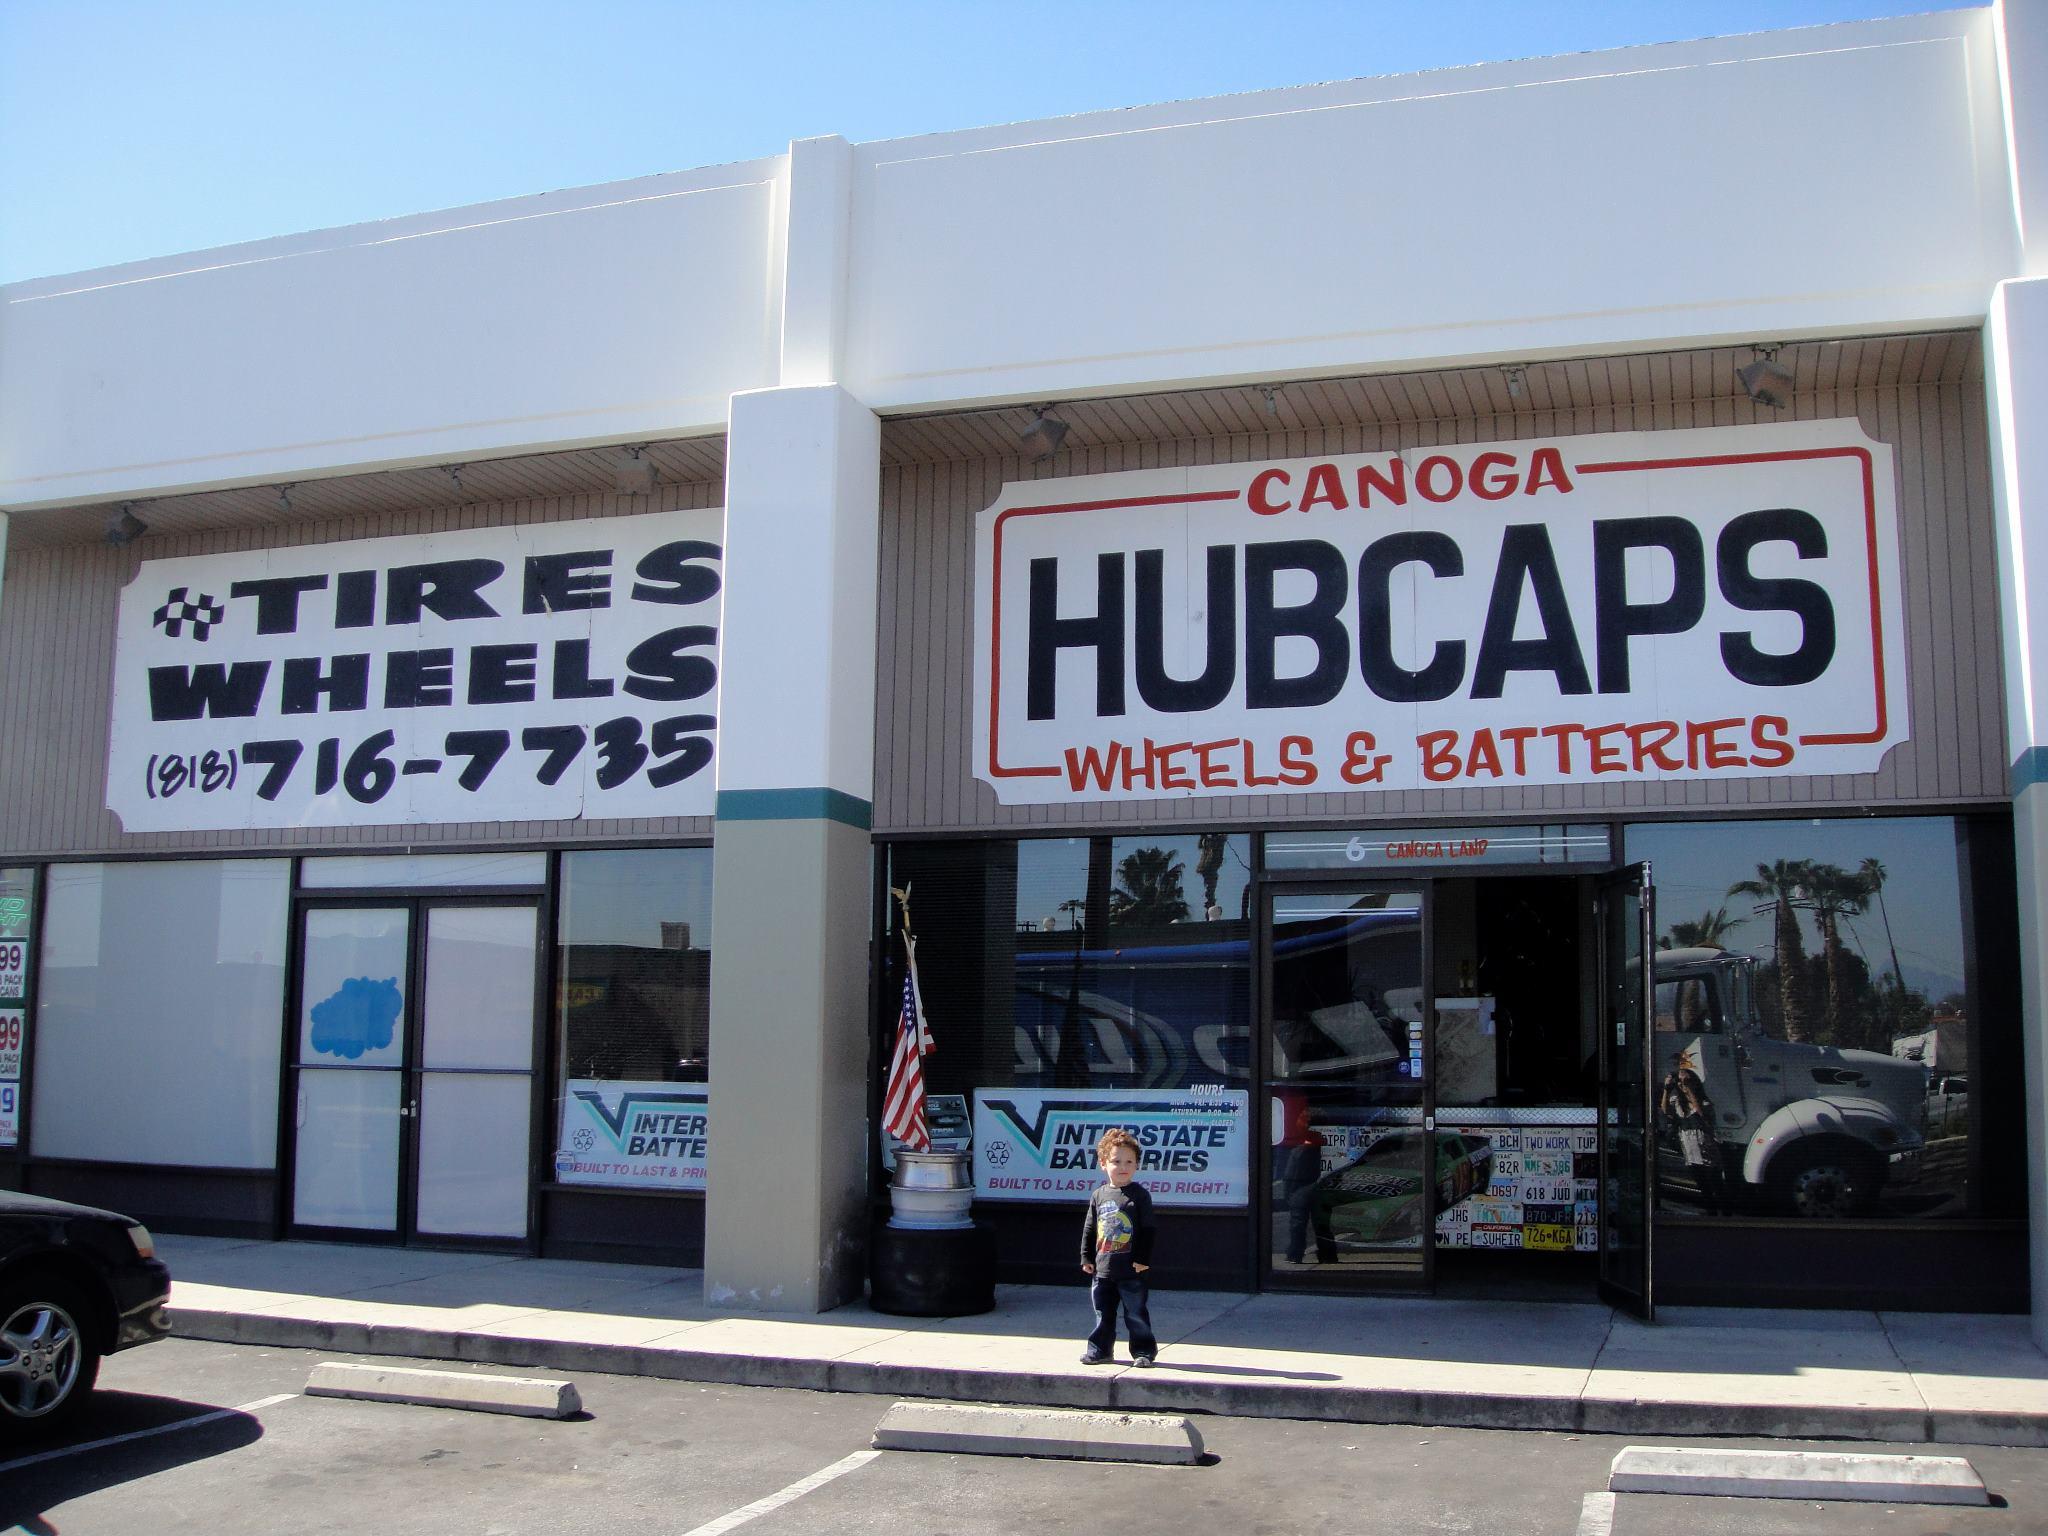 Canoga Hubcaps Tires & Wheels - Canoga Park, CA 91304 - (818)716-7735 | ShowMeLocal.com